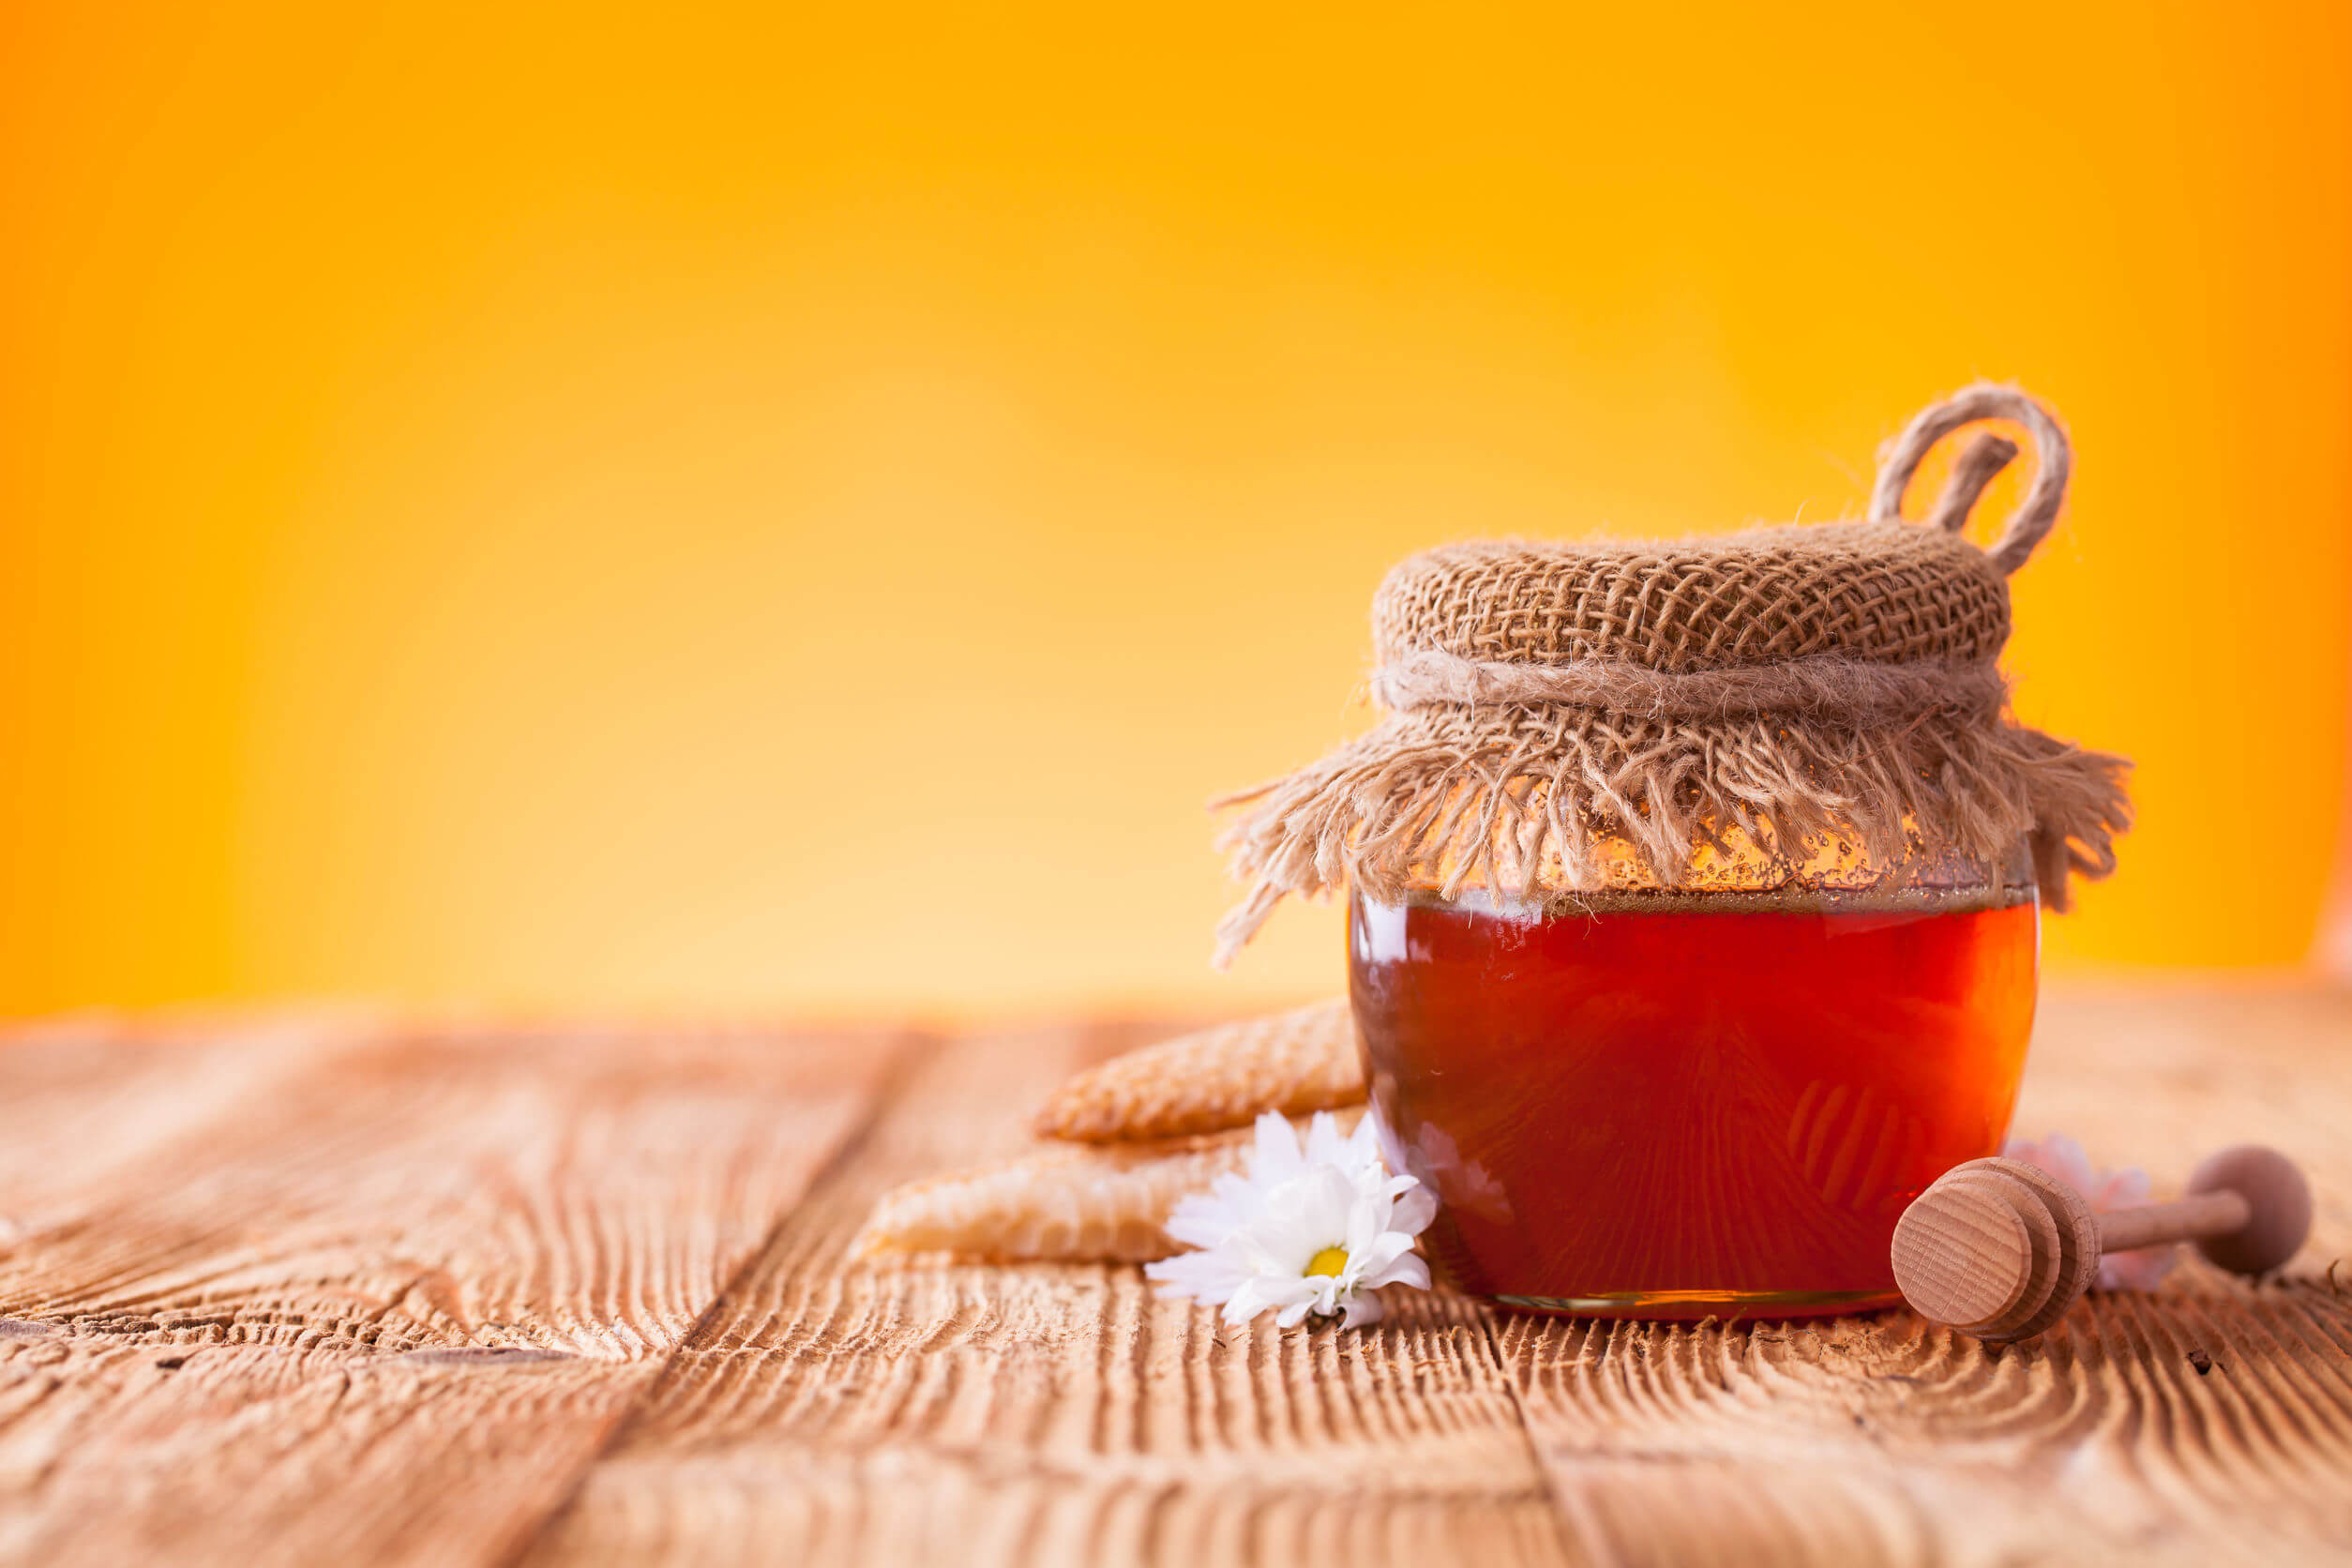 Botulisme kan optreden bij de consumptie van honing.